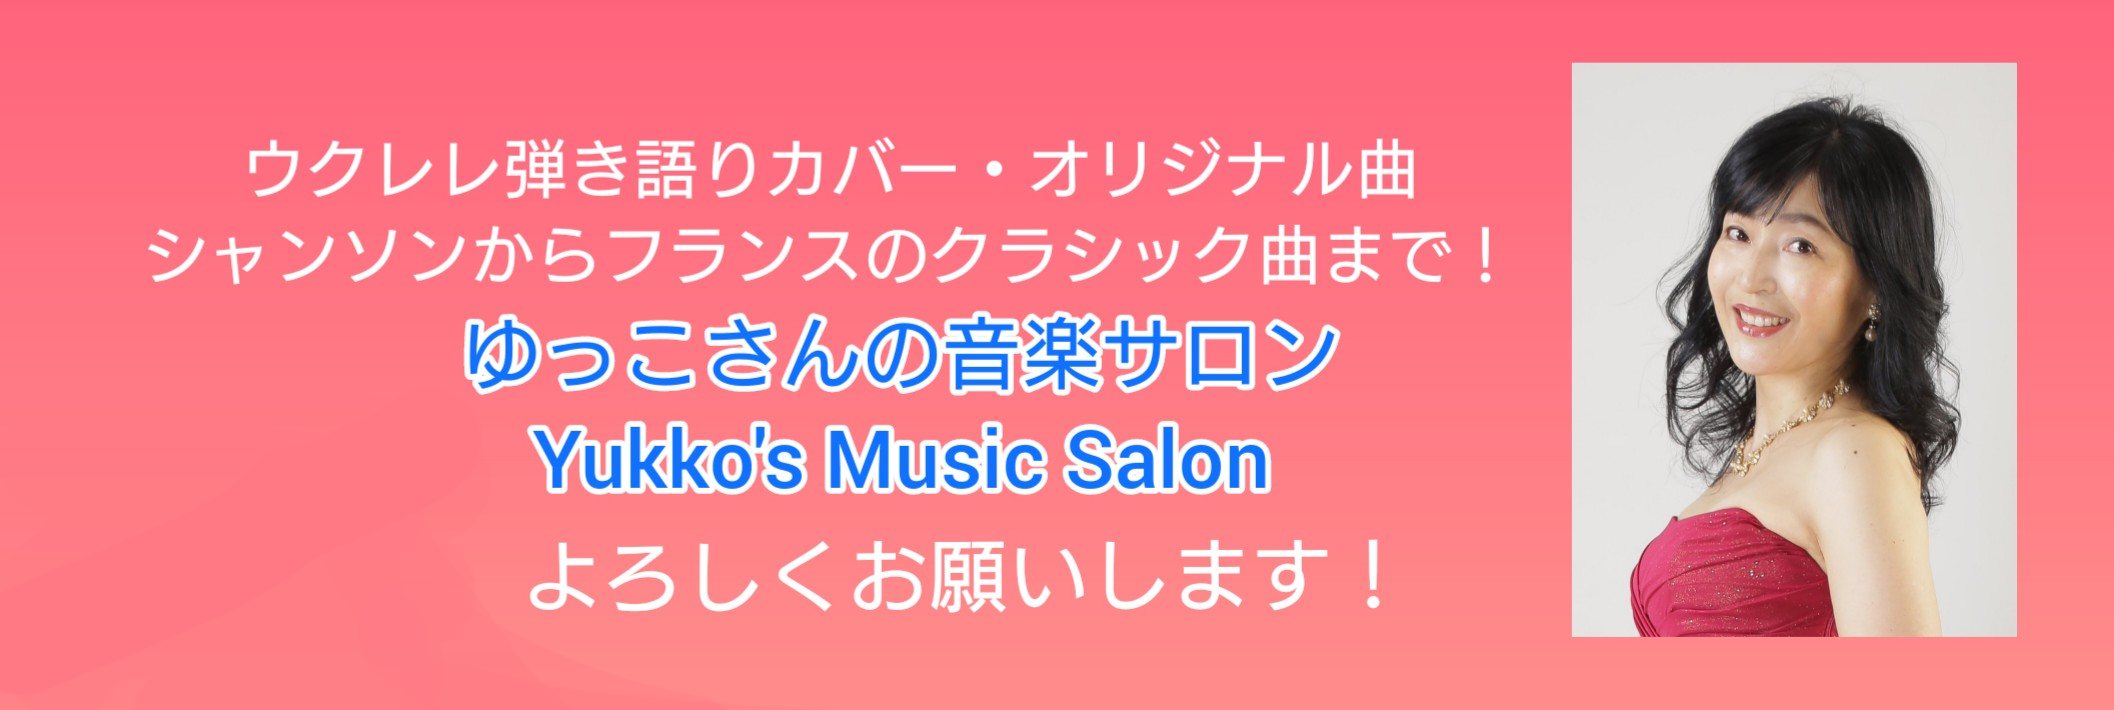 ゆっこさんの音楽サロン Yukko's Music Salon